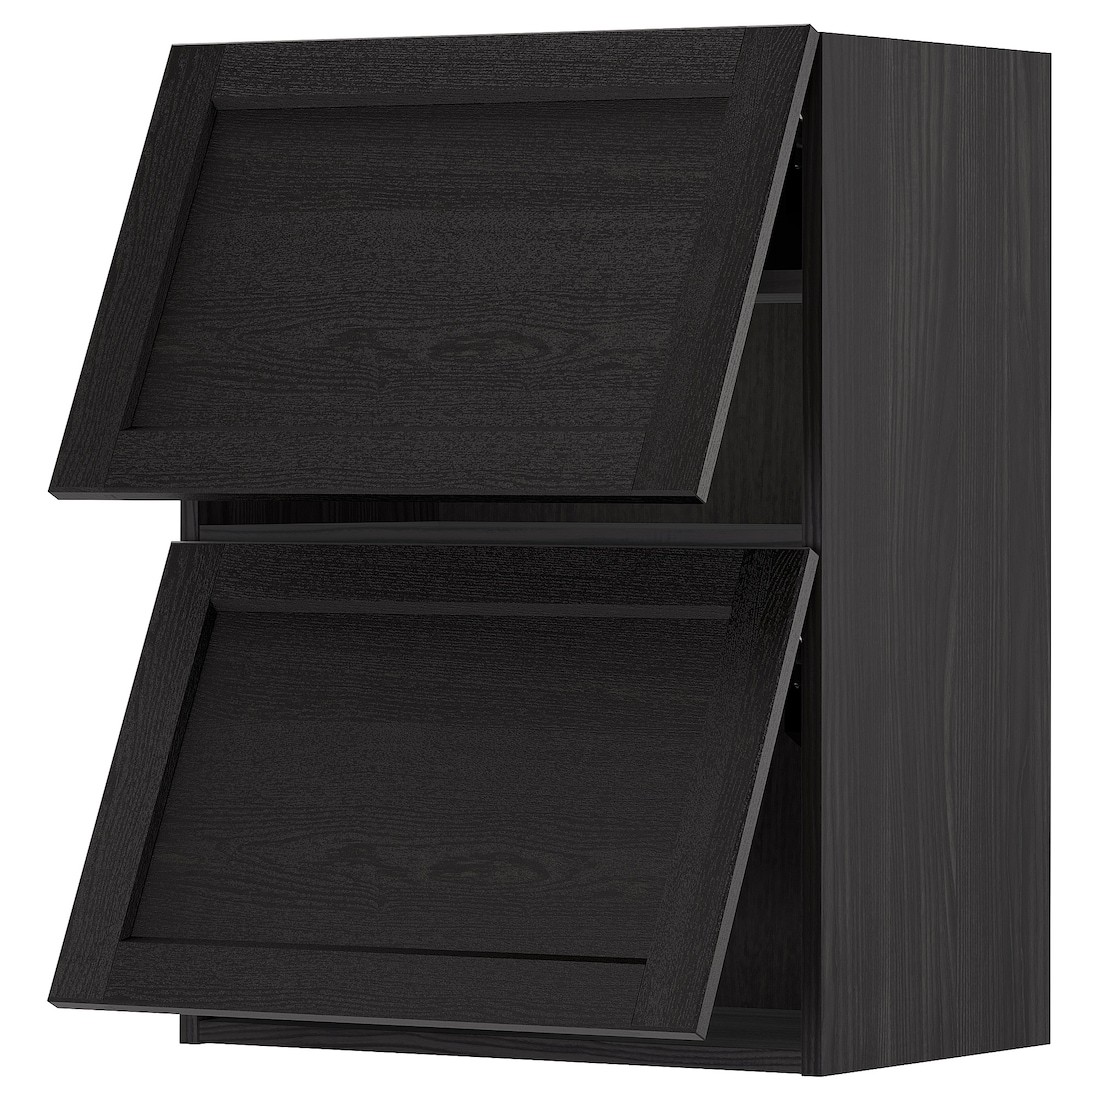 IKEA METOD МЕТОД Навесной горизонтальный шкаф / 2 двери, черный / Lerhyttan черная морилка, 60x80 см 99391759 993.917.59